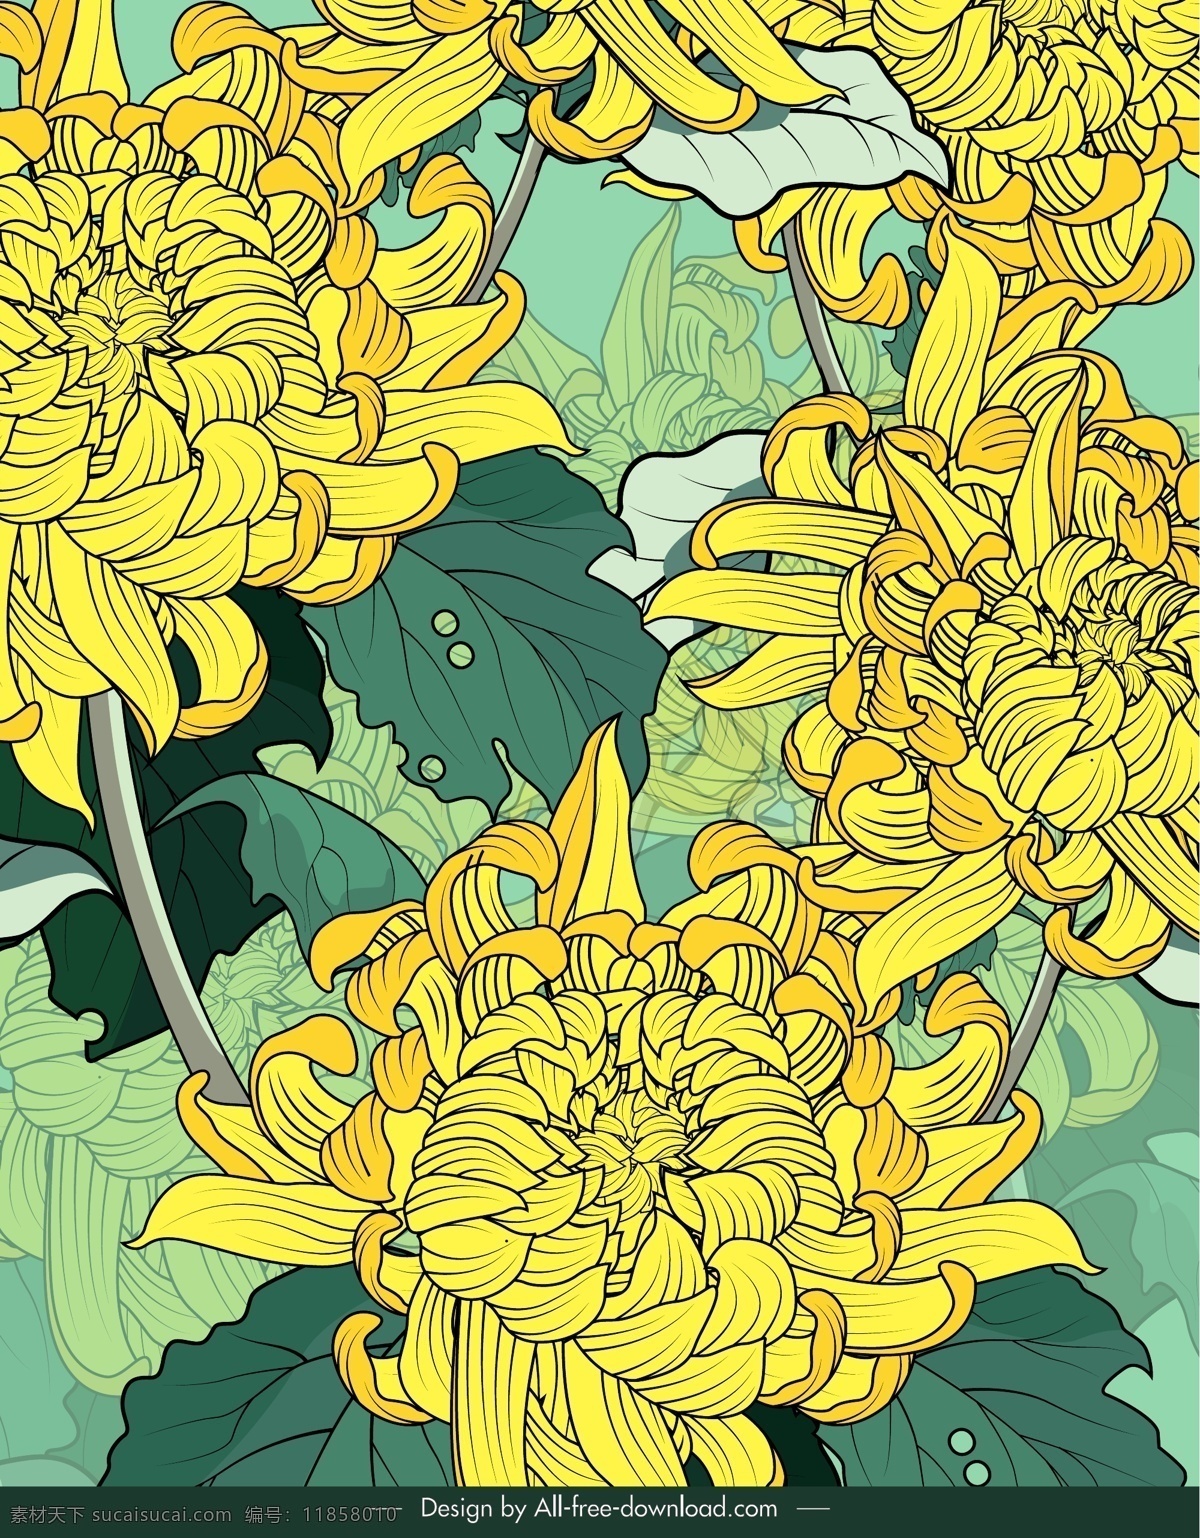 彩绘 黄色 盛开 菊花 矢量 彩绘黄色 矢量素材 背景 花卉 工笔 文化艺术 传统文化